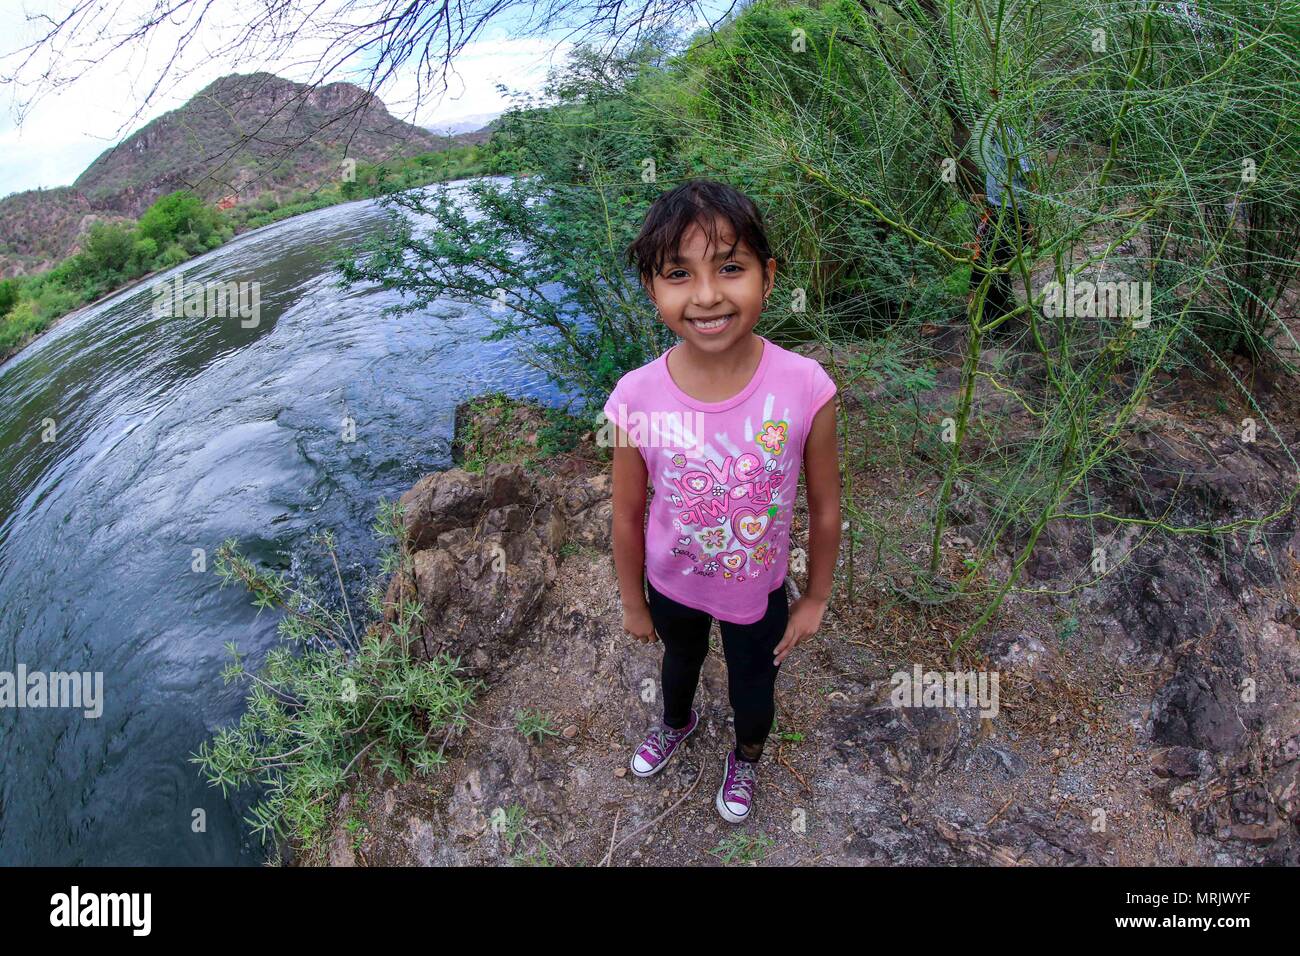 Un grande flusso di milioni di metri cubi di acqua dal fiume Yaqui, durante l'estate stagione piovosa. Soyopa, Sonora Messico. Paesaggio del fiume, verde Foto Stock